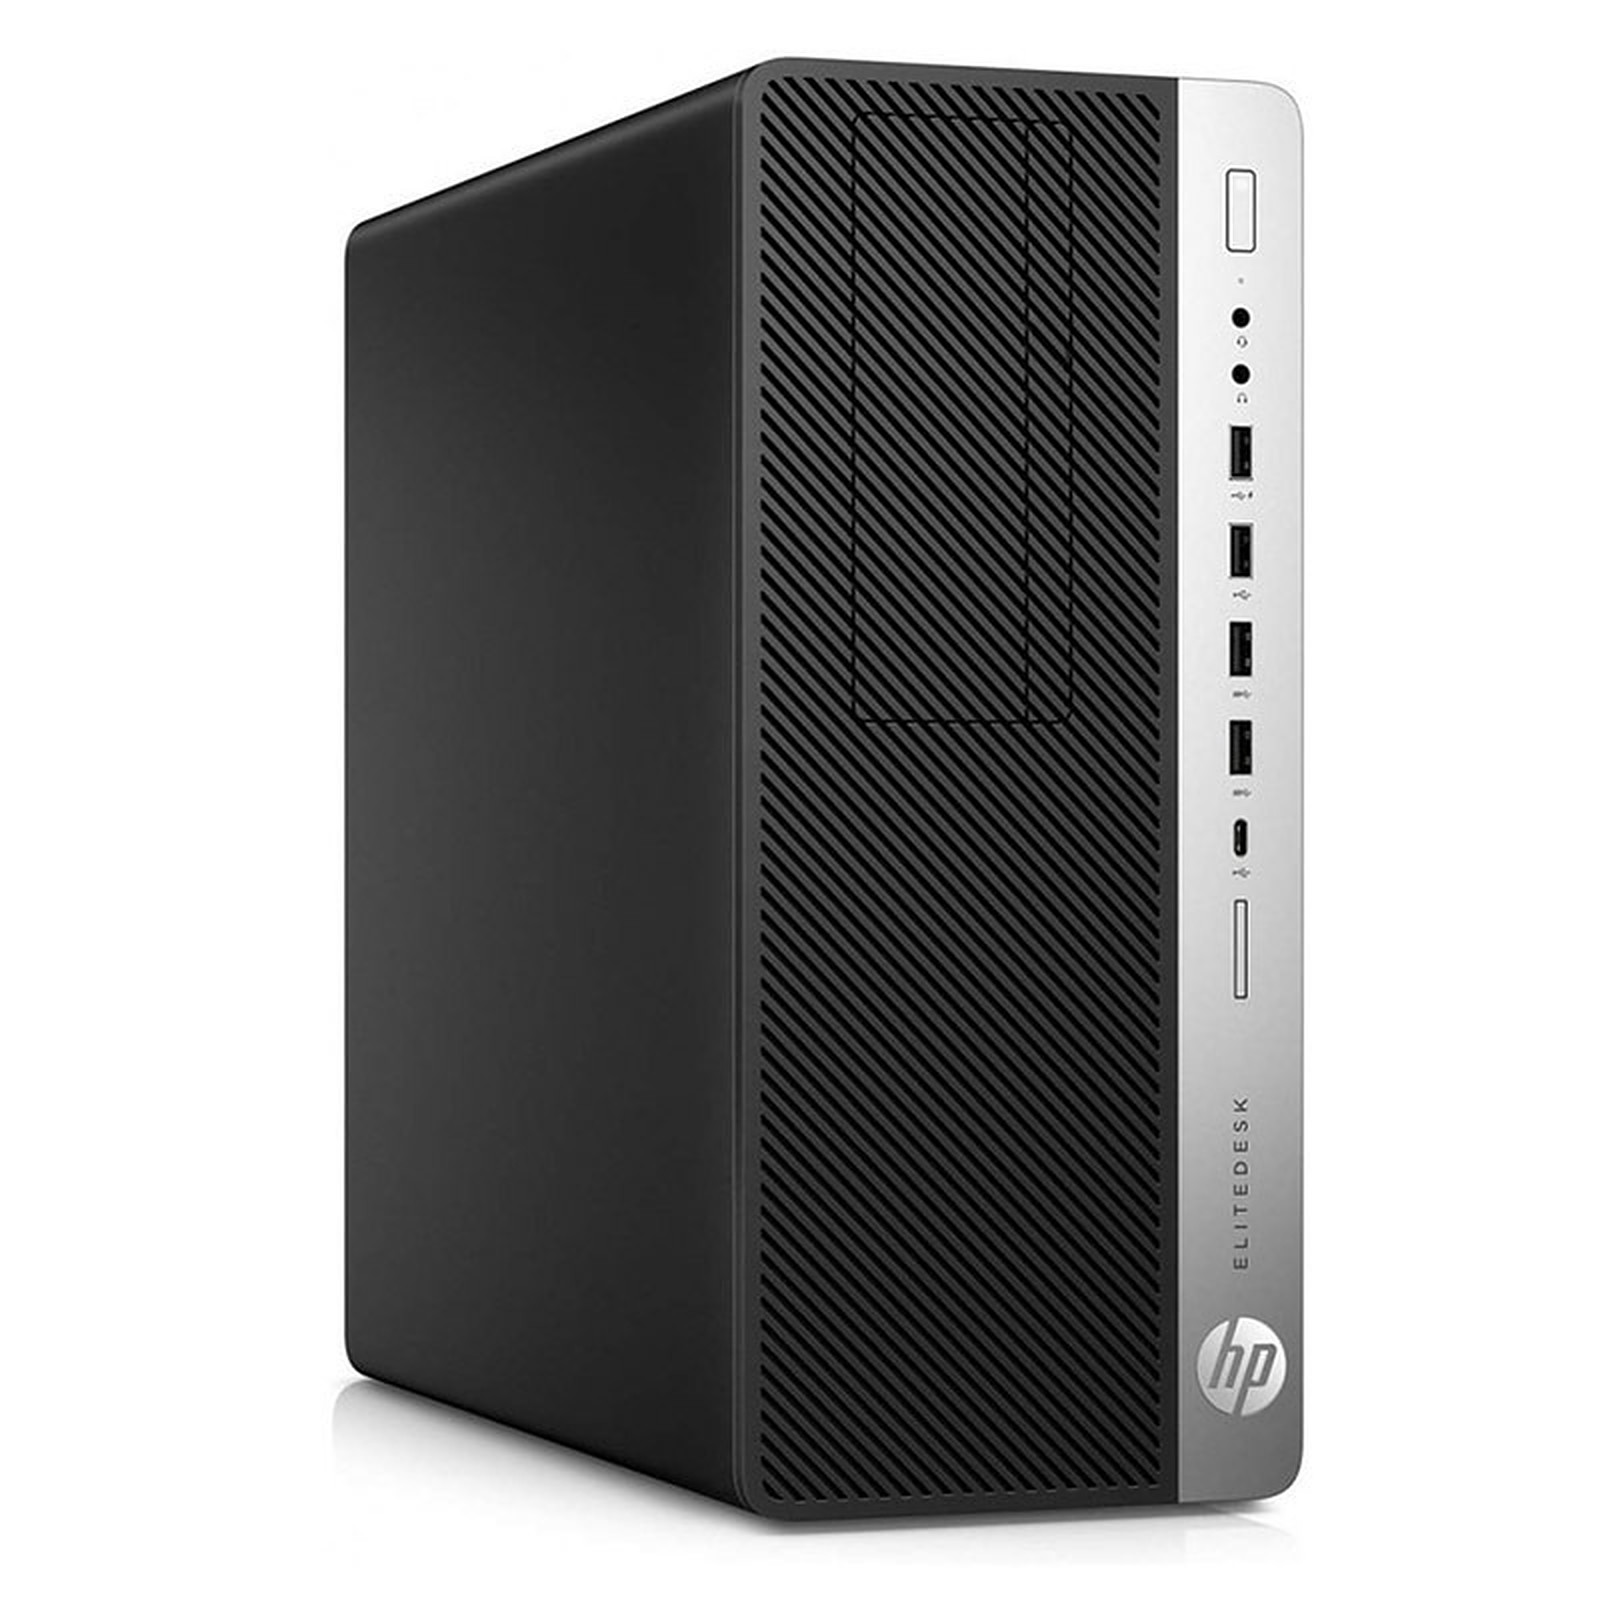 HP LPG-800G3 (I565848S) · Reconditionne - PC de bureau reconditionne HP